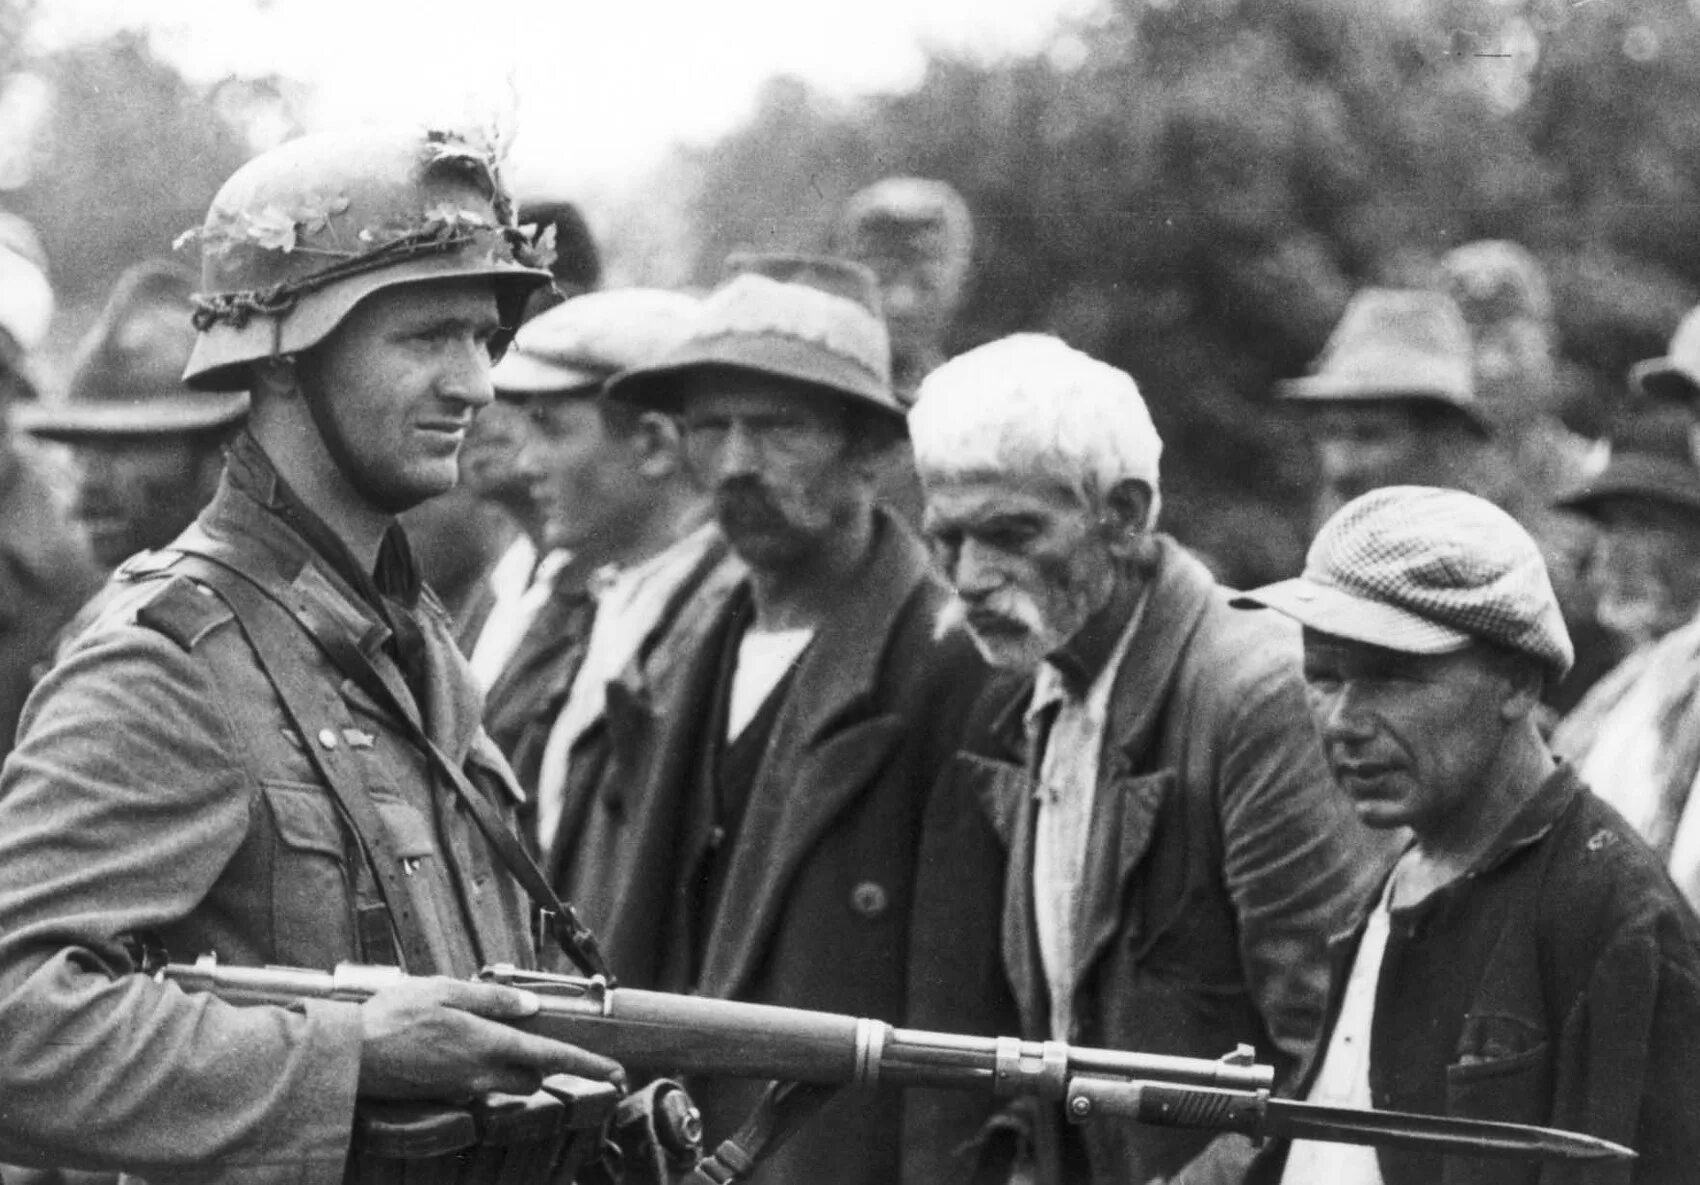 Движение сопротивления в европе коллаборационизм. Йозеф Шульц немецкий солдат. Йозеф Шульц немецкий солдат фото. Солдат — Йозеф блоше (Josef Blosche).